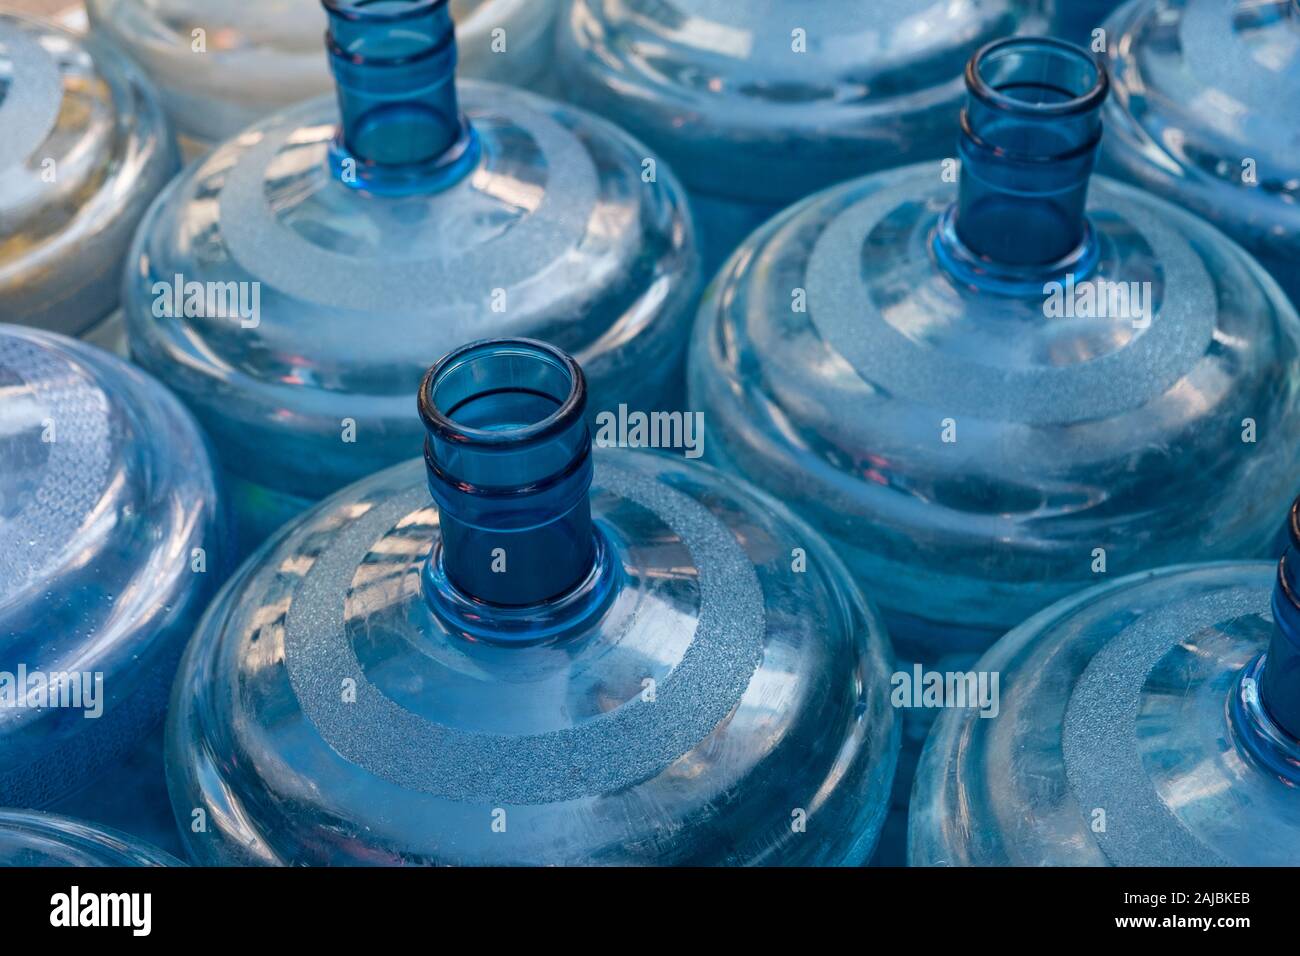 empty plastic canister bottles for water dispenser Stock Photo